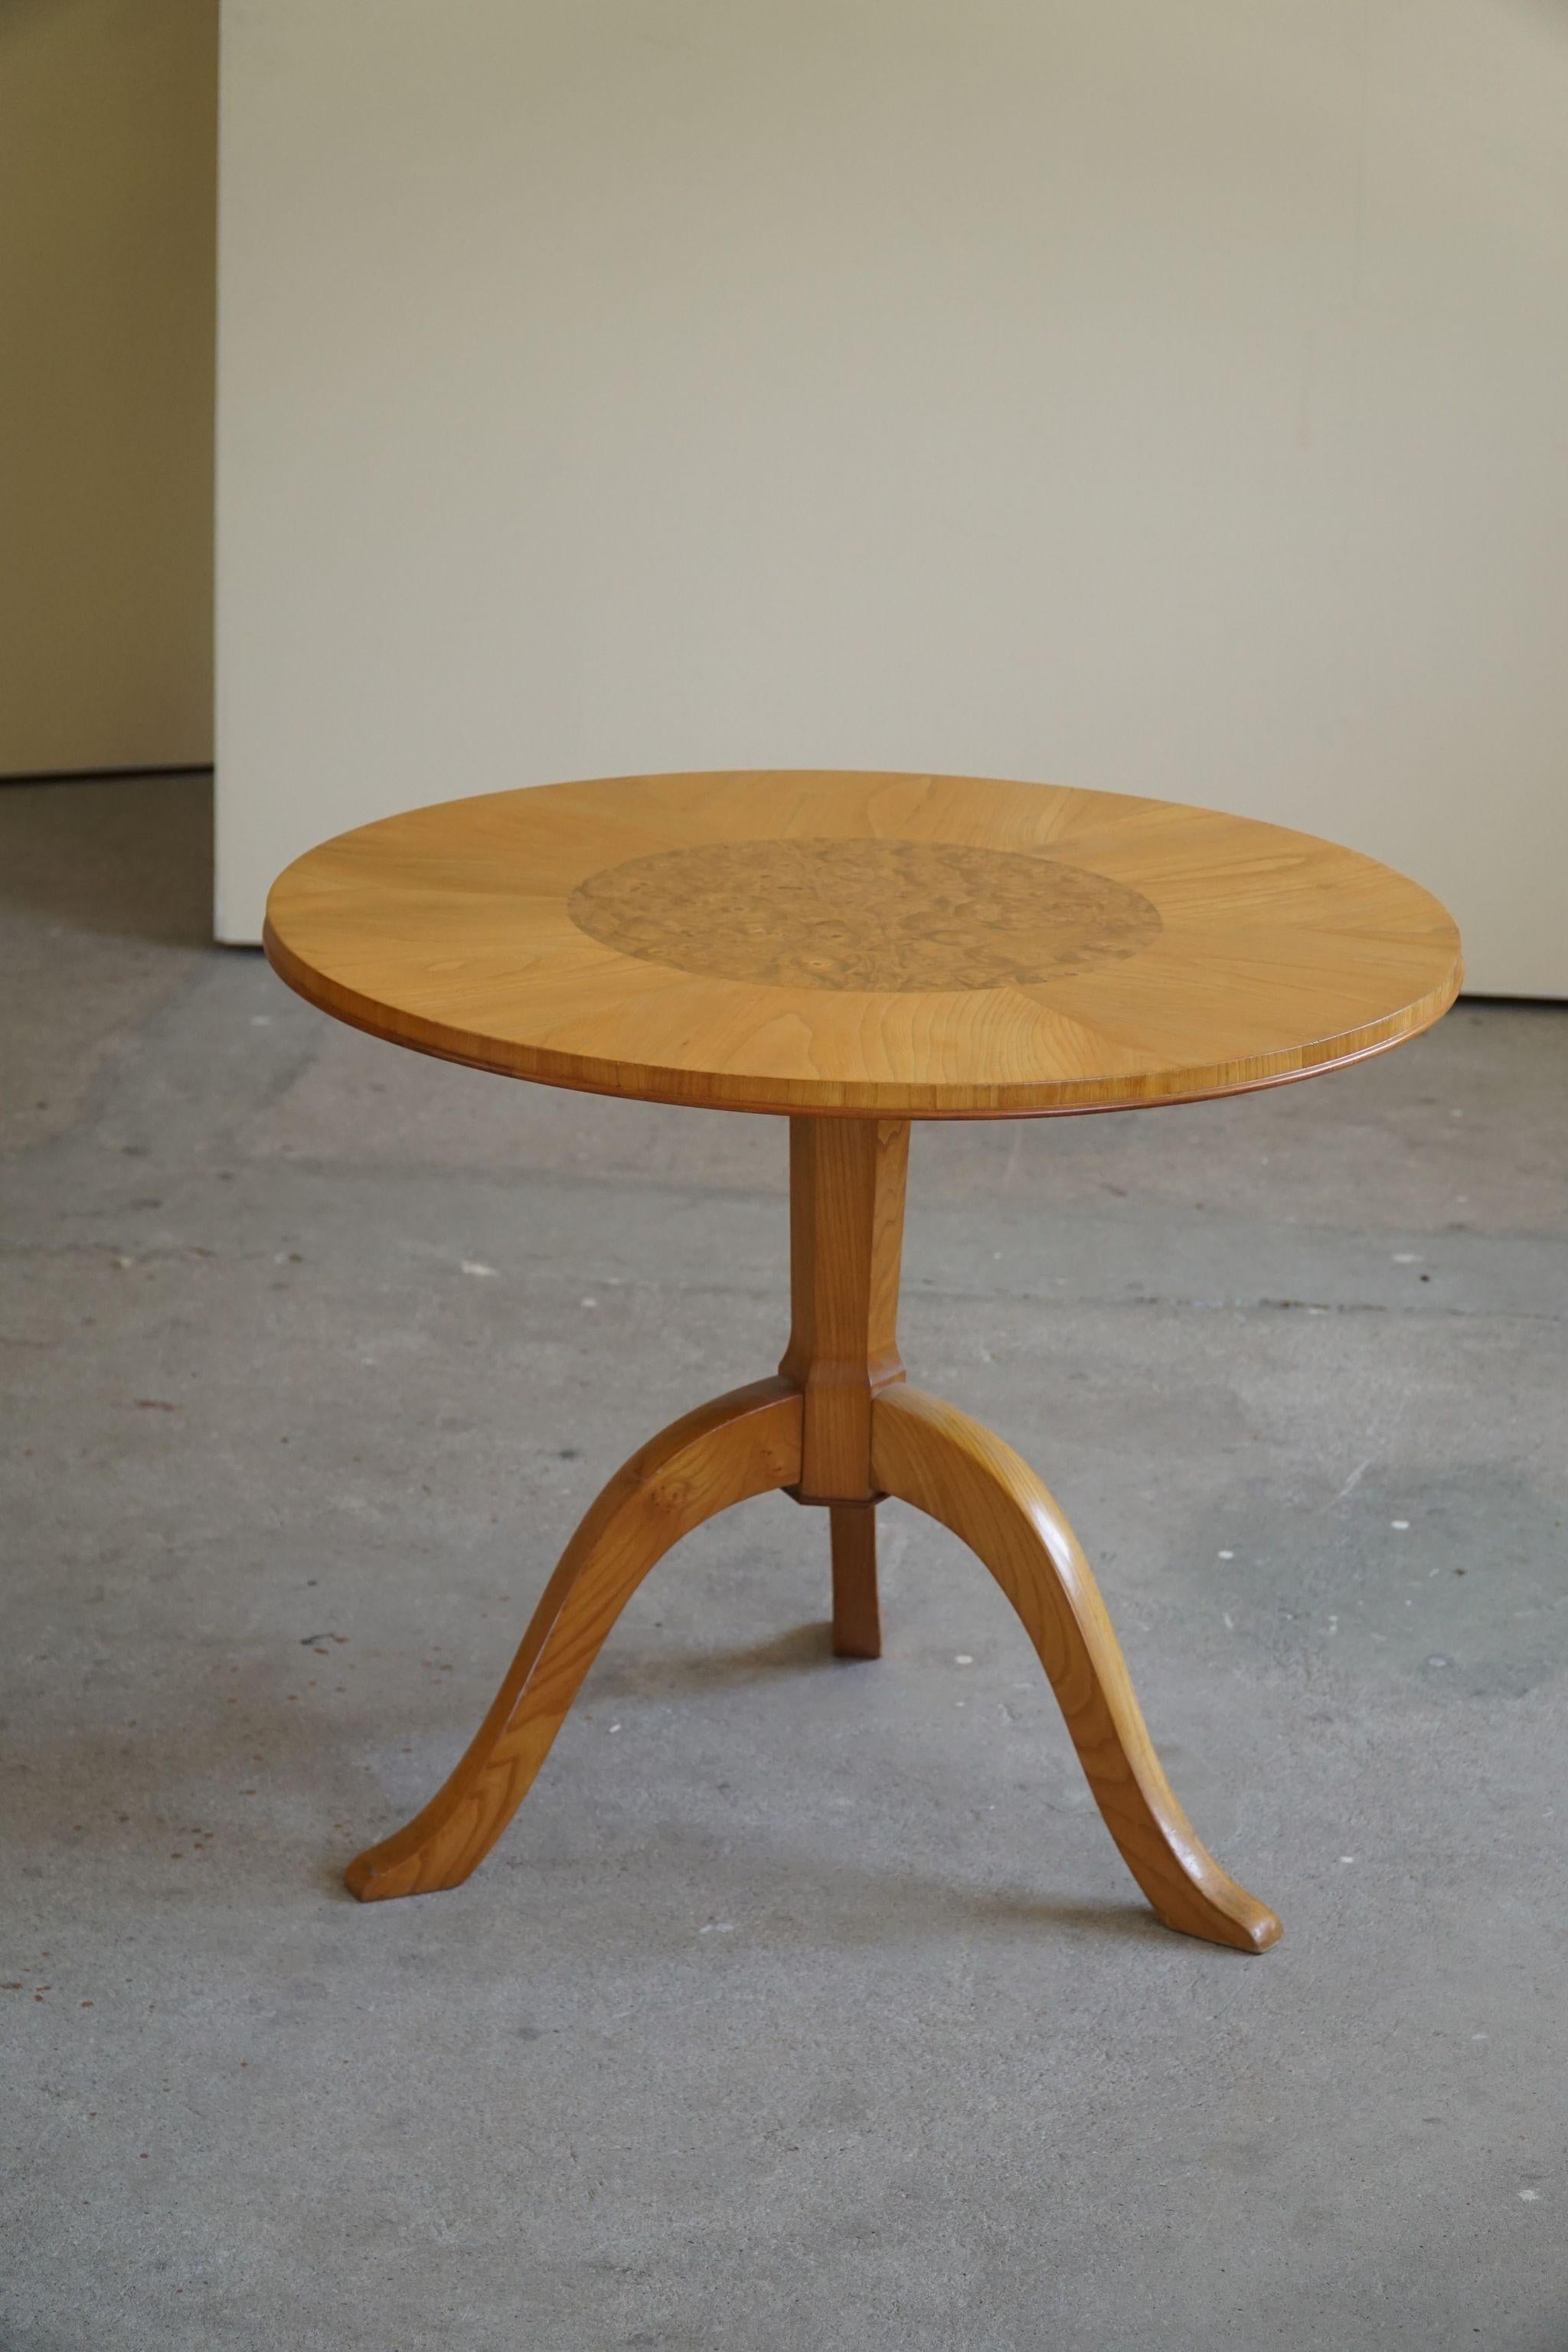 Une table d'appoint ronde classique Art Déco / un piédestal en orme et bouleau. Fabriqué par un ébéniste suédois dans les années 1940.
Design fin et décadent, beau travail de veinage dans cette pièce vintage.
L'impression générale est